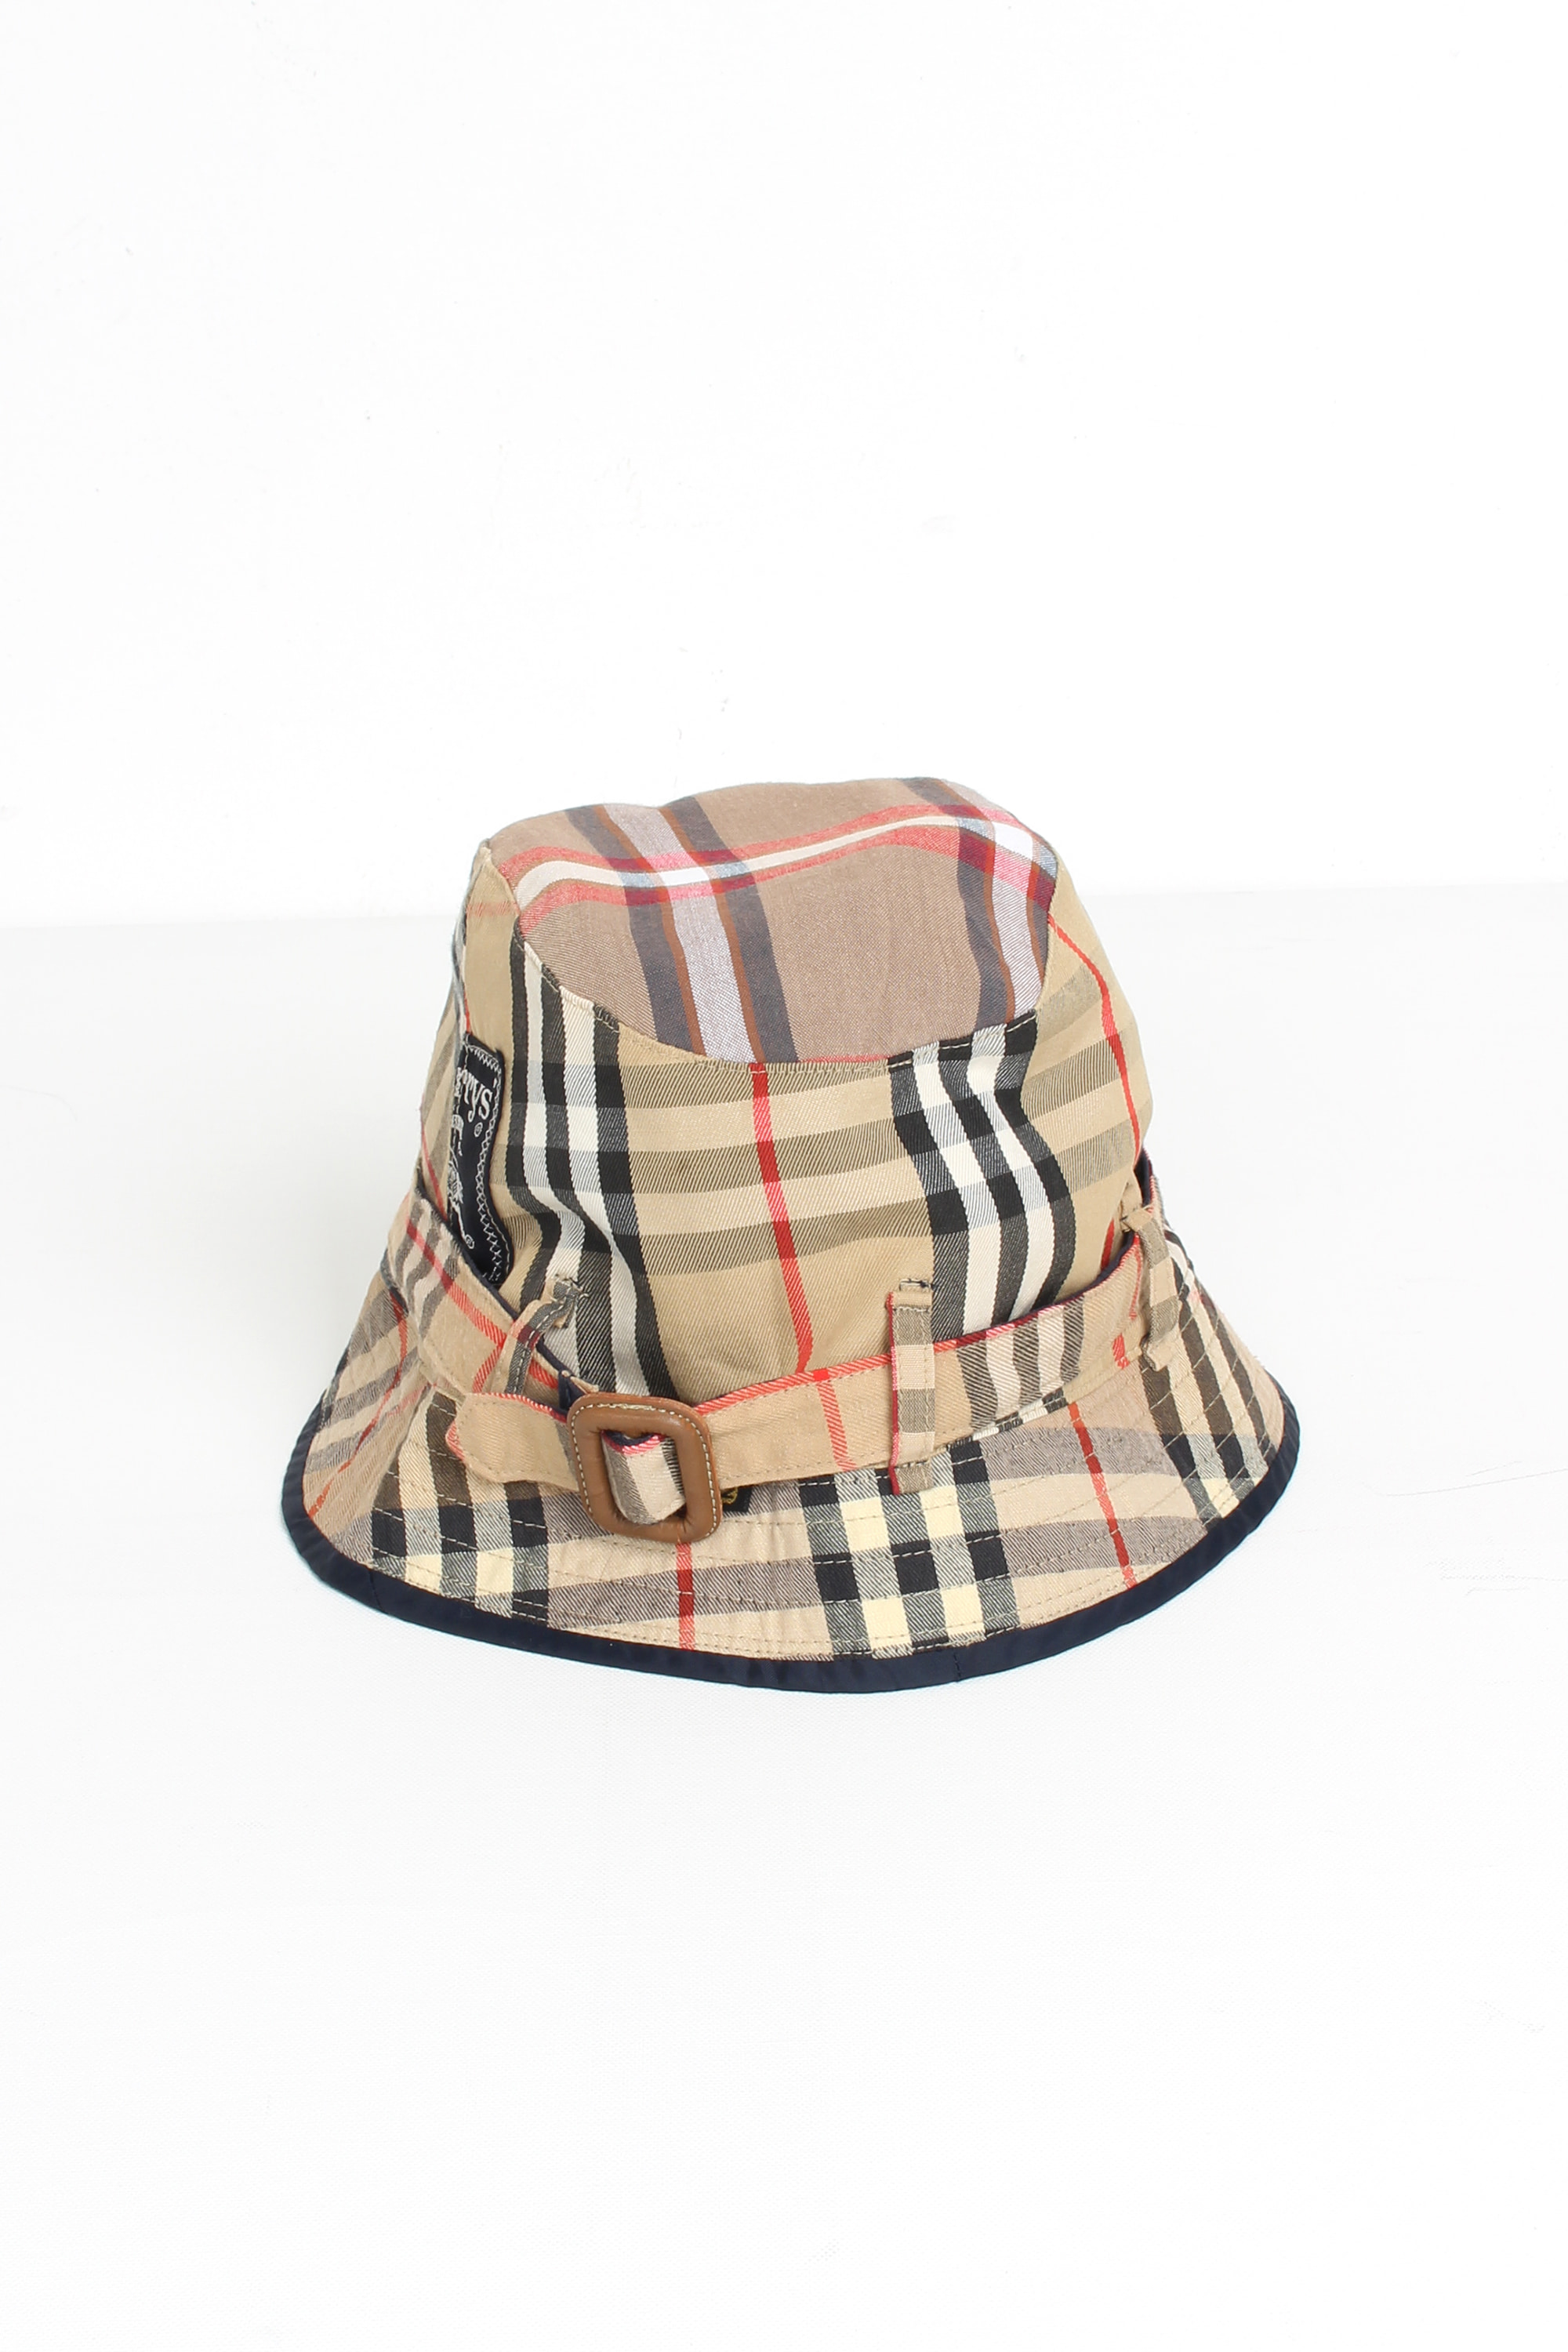 Burberrys Remake Bucket Hat